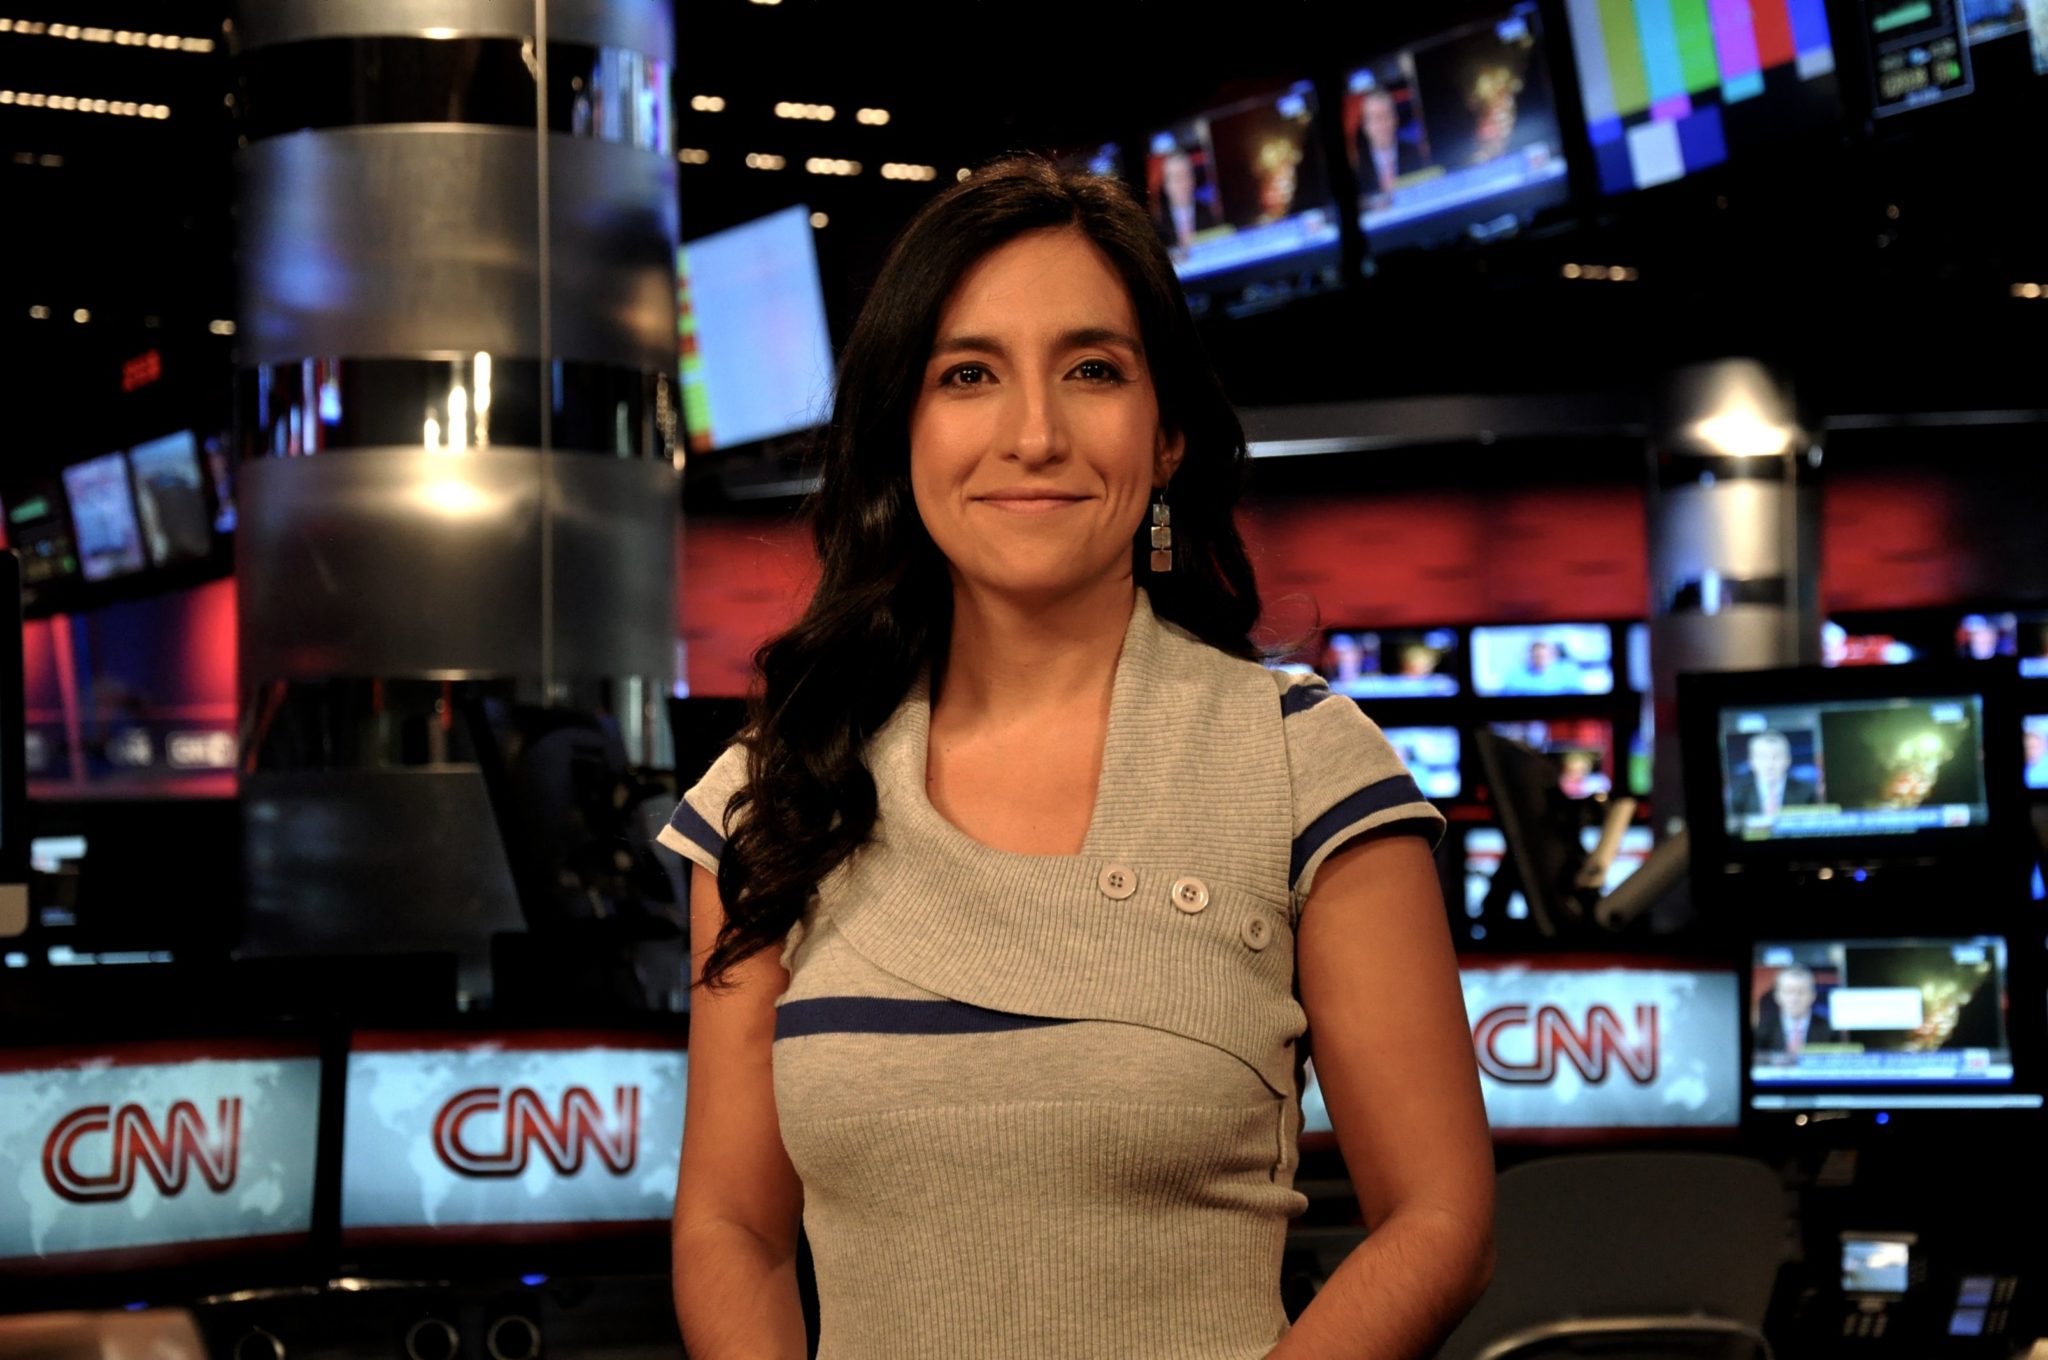 Periodista chilena en EEUU es criticada por manifestar ‘pena’ ante ventanas rotas de CNN tras asesinato de Floyd